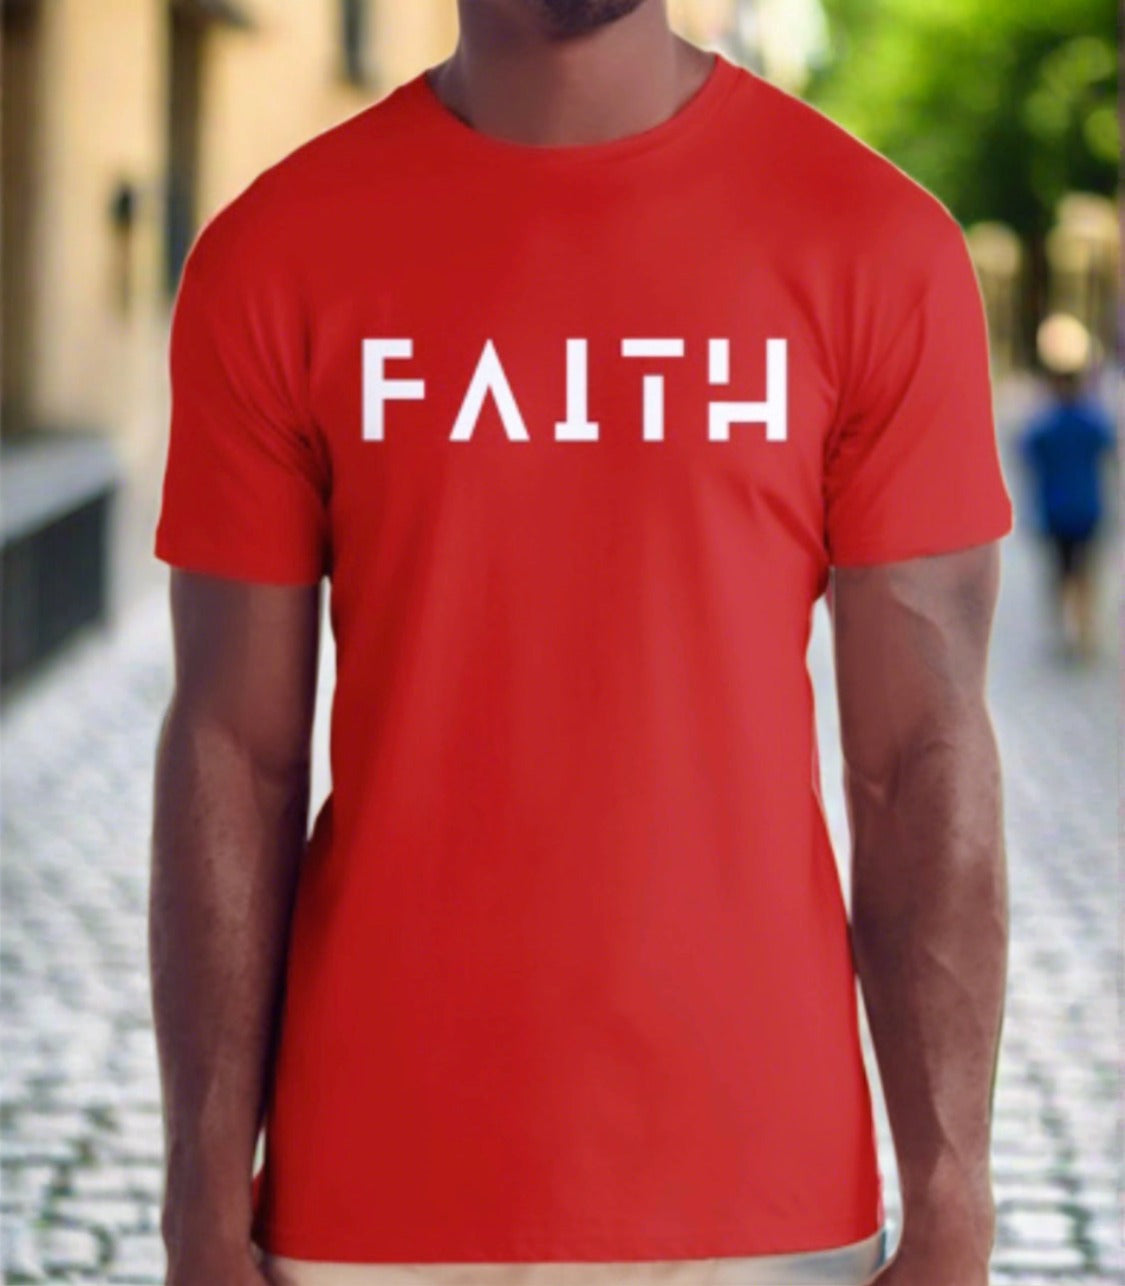 "FAITH" T-Shirt